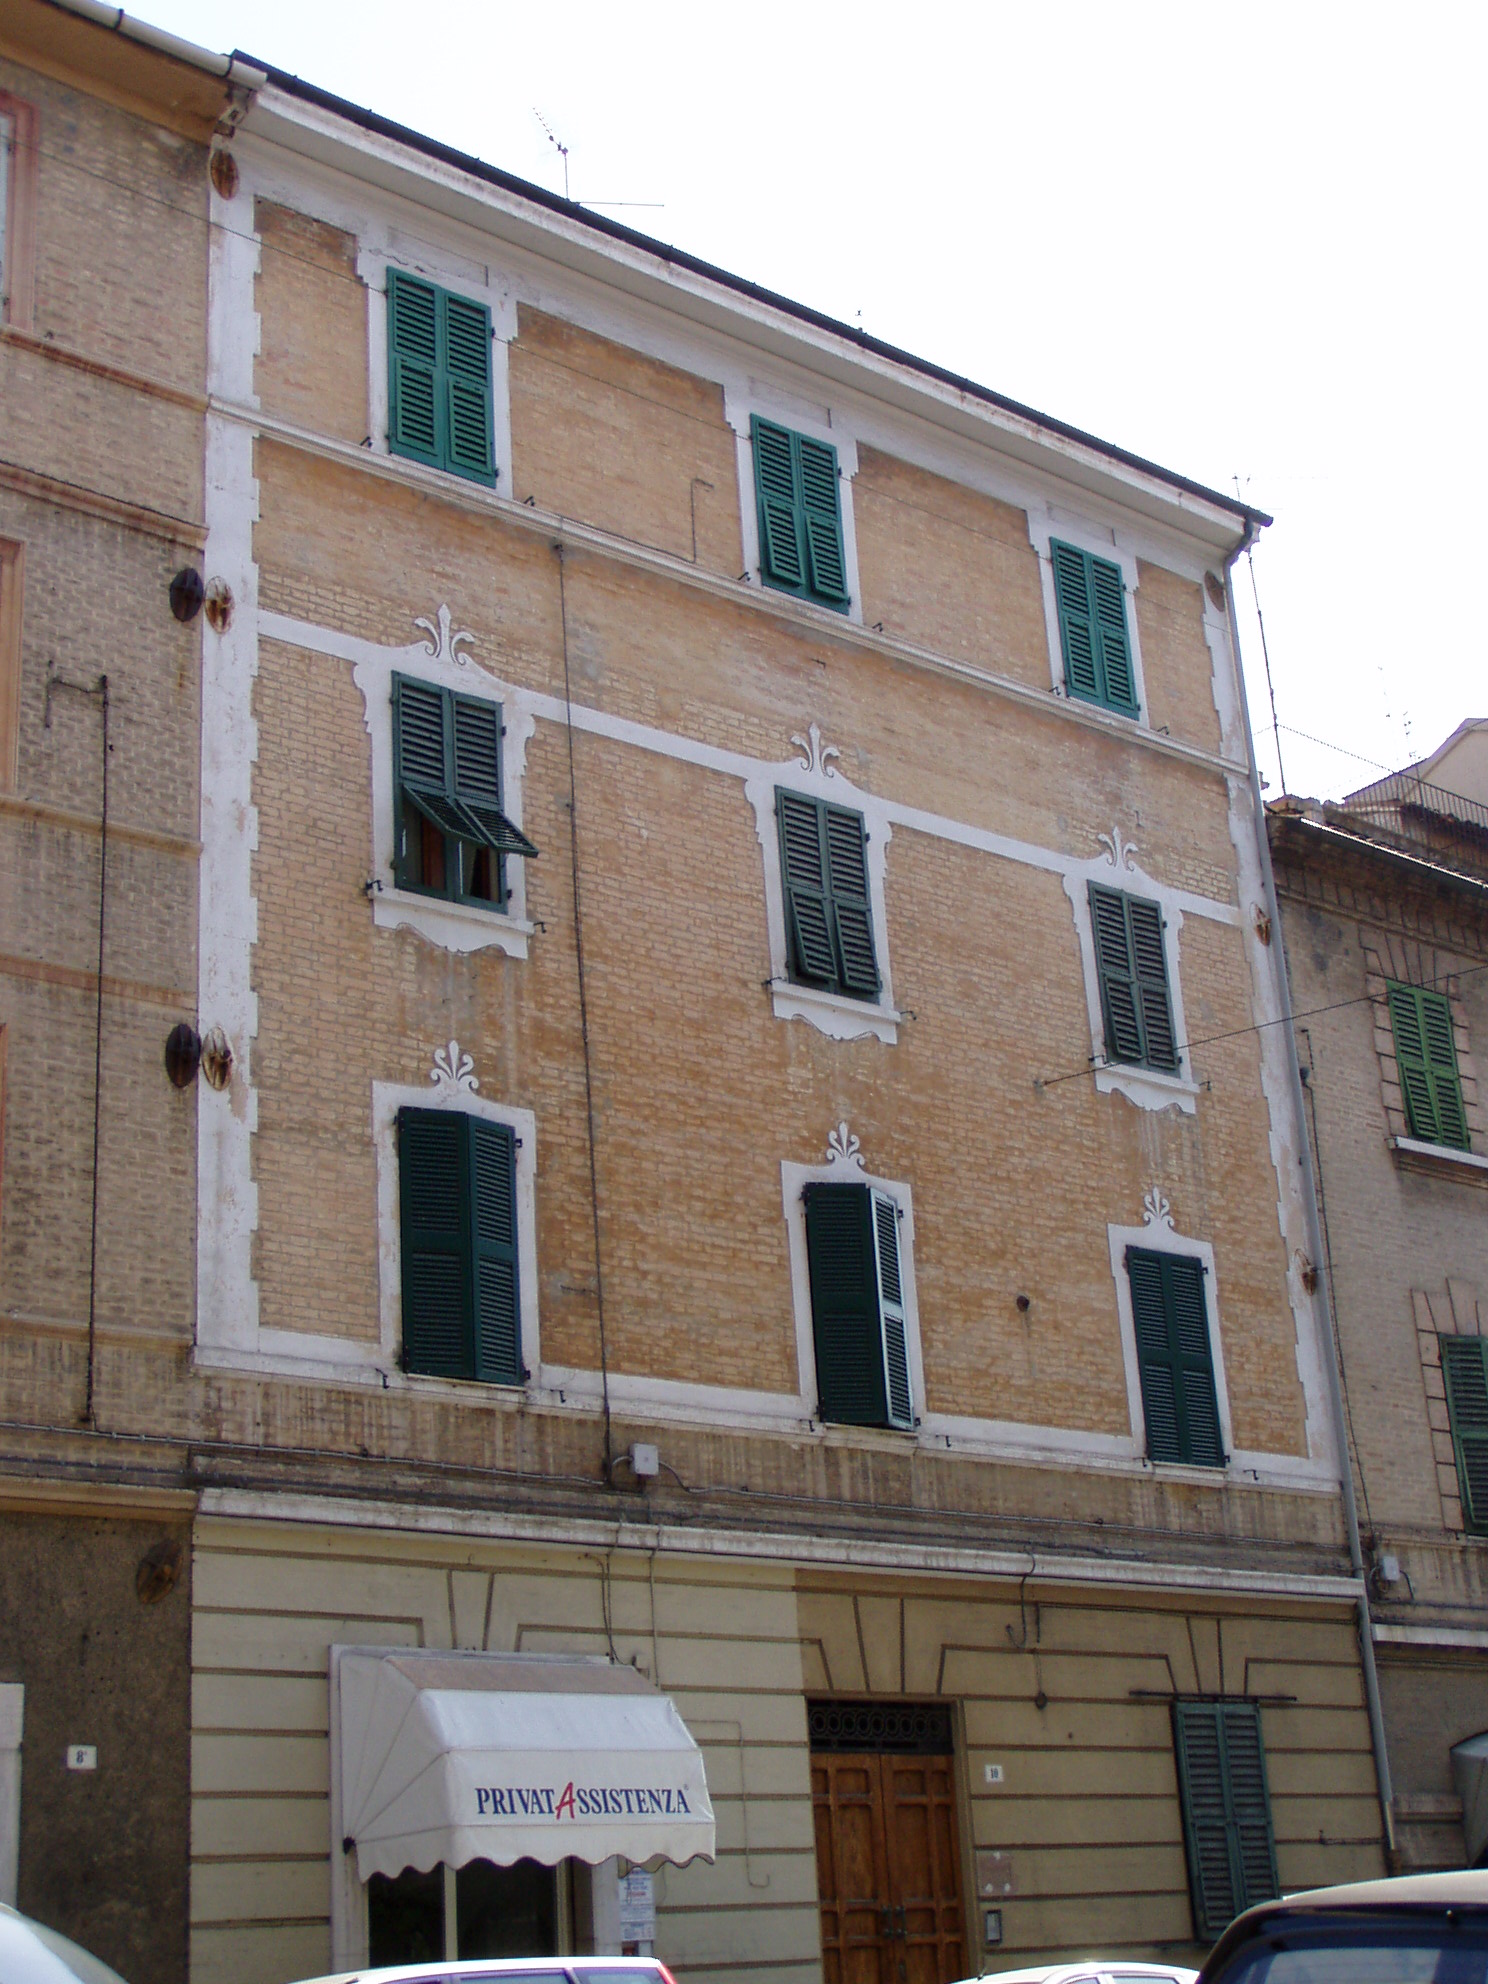 Palazzetto in stile liberty (palazzetto, di appartamenti) - Ancona (AN) 